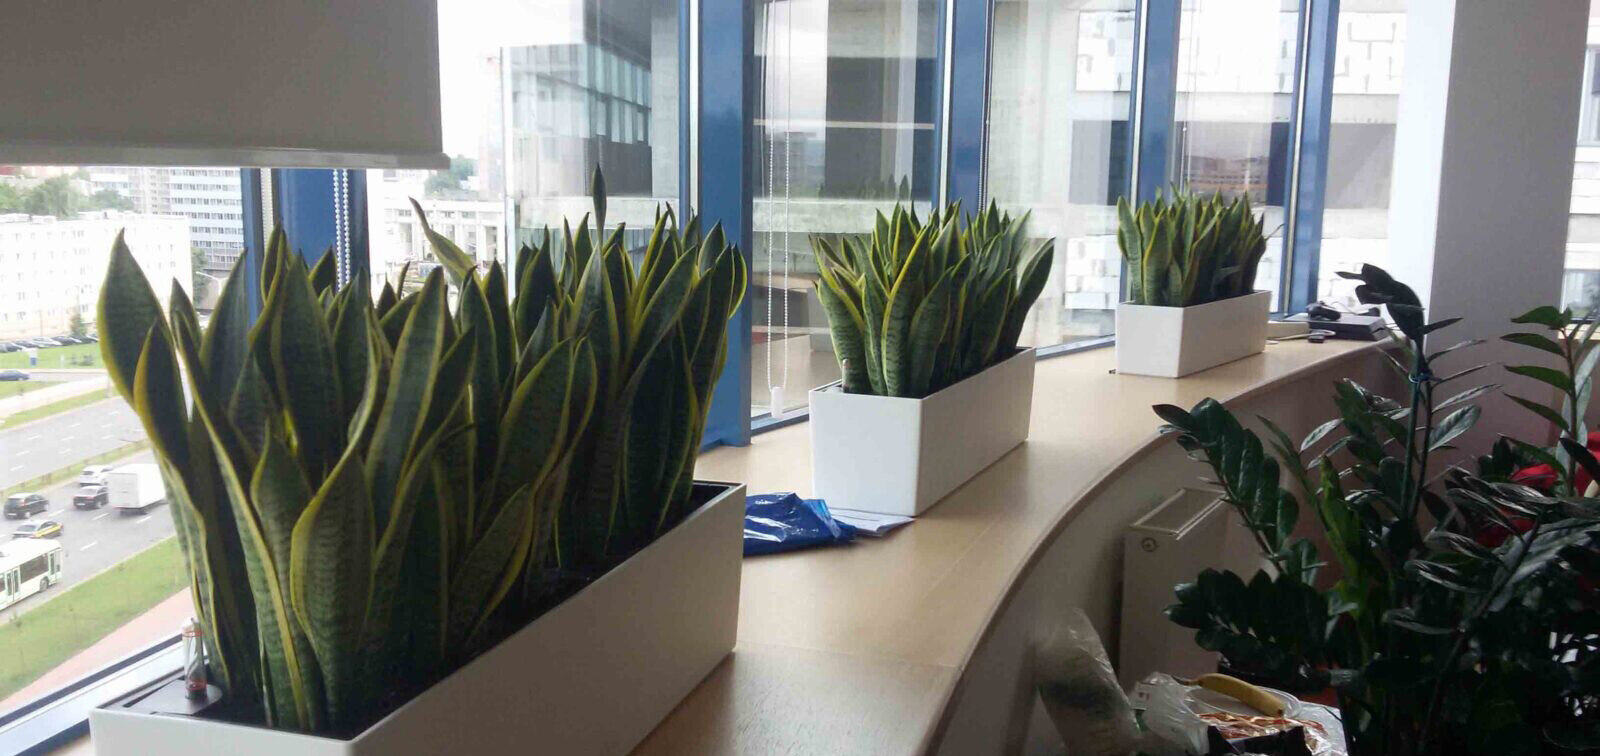 Уход за растениями в офисах